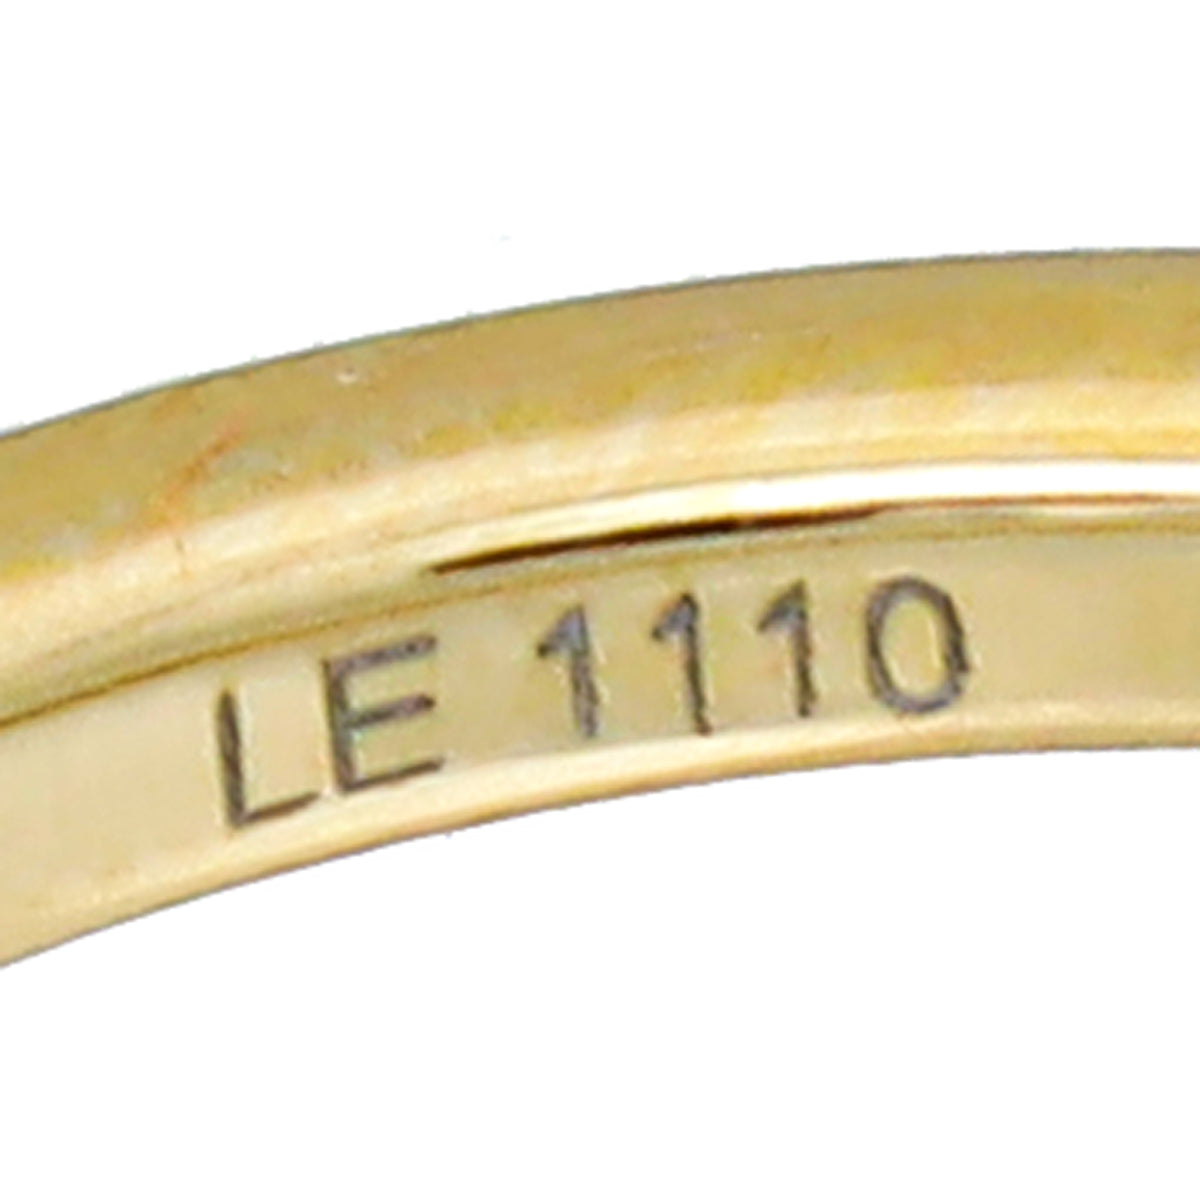 Louis Vuitton Gold Sweet Charms Sautoir Bracelet – The Closet